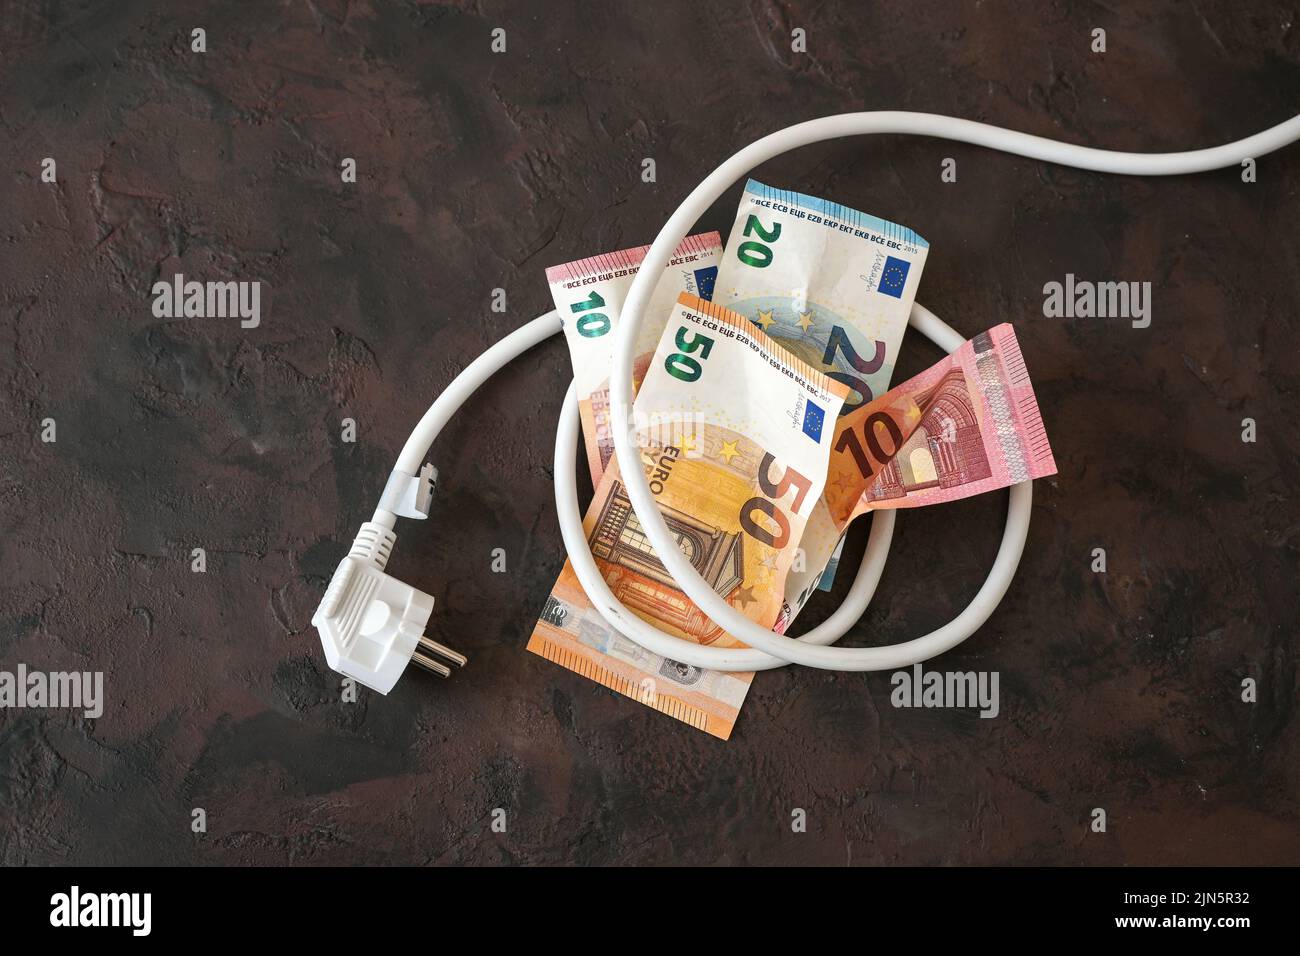 Pacchetto di banconote in euro legate a un cavo elettrico con spina, concetto di efficienza energetica, consumo energetico e aumento dei costi dell'elettricità Foto Stock